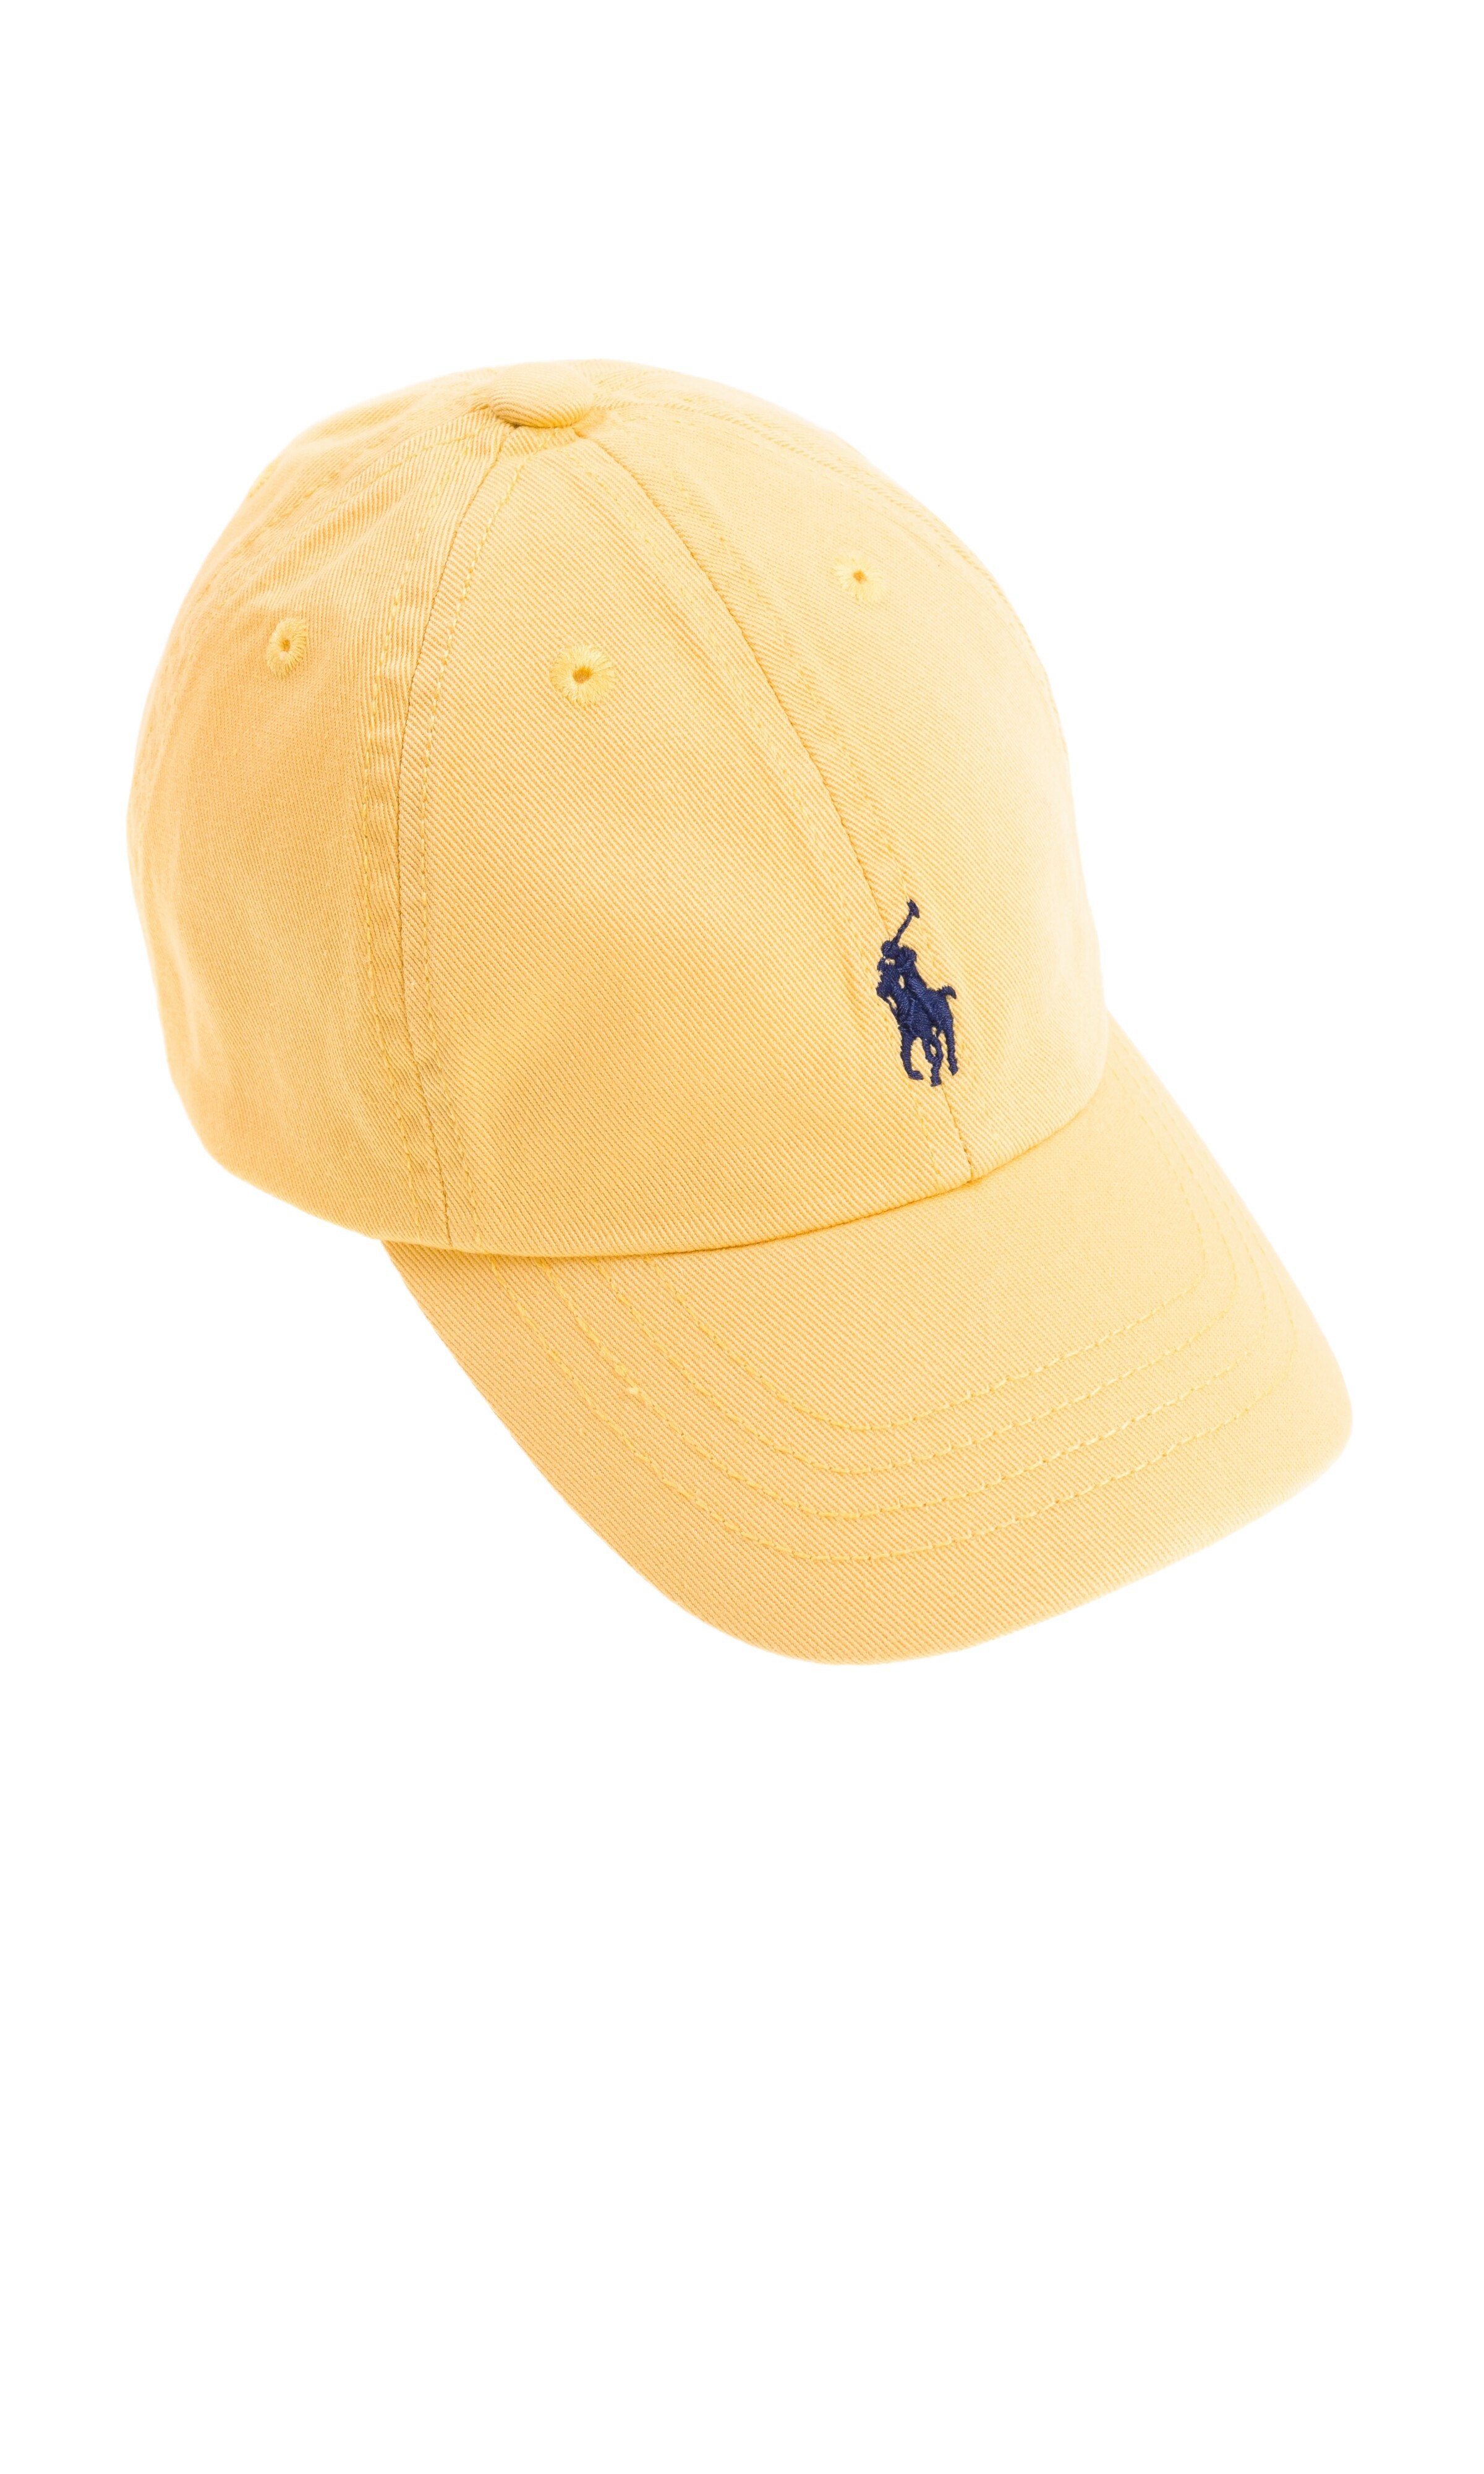 ralph lauren yellow cap